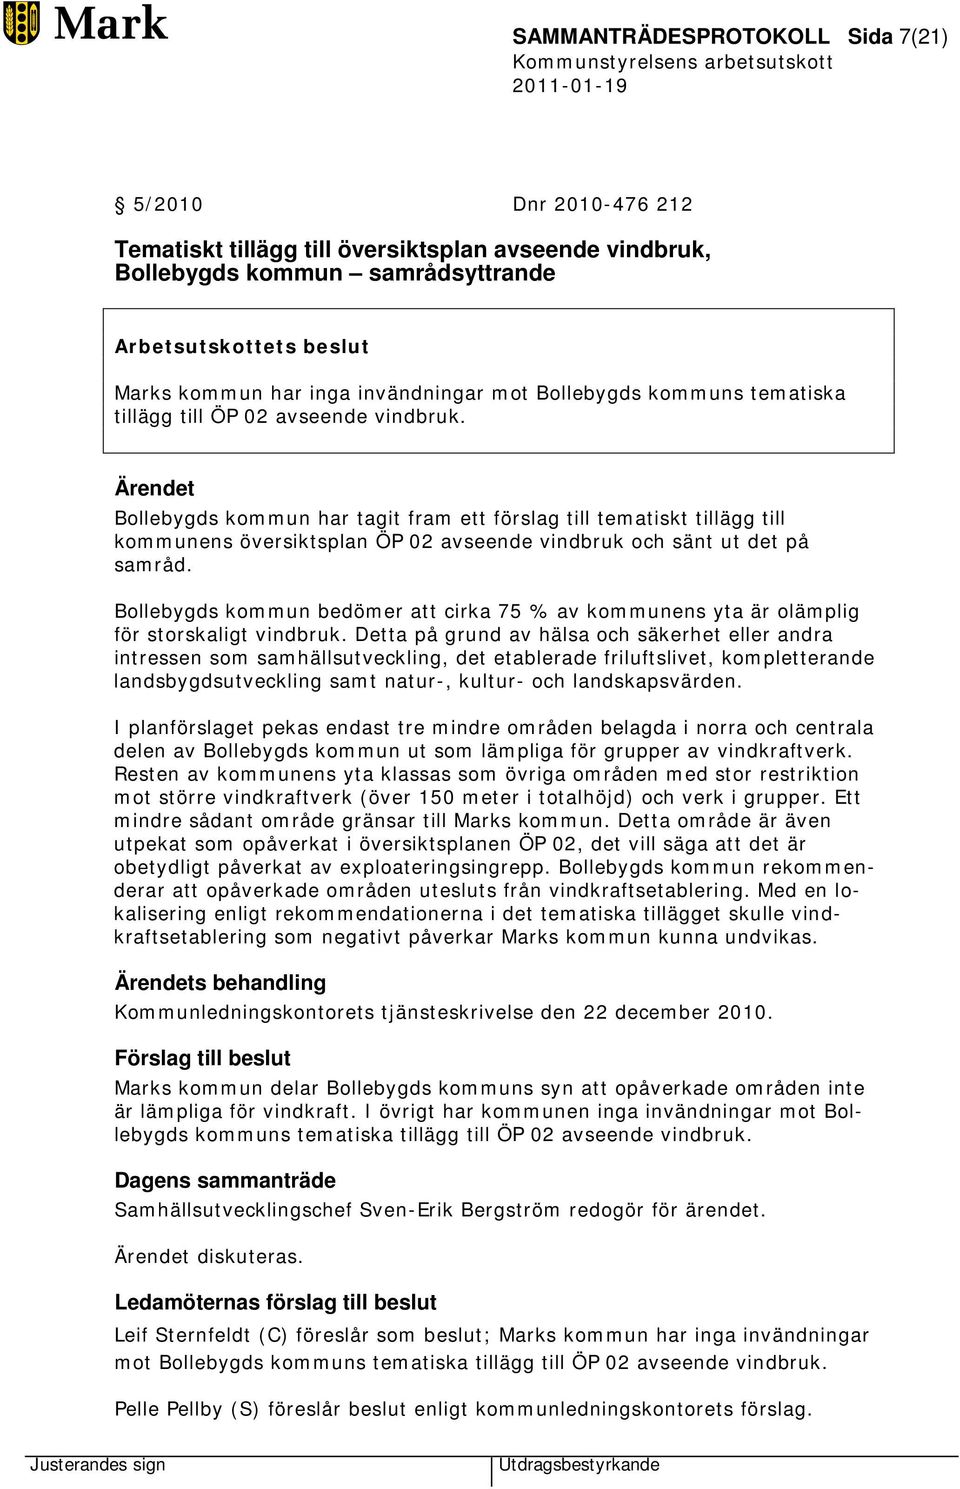 Bollebygds kommun har tagit fram ett förslag till tematiskt tillägg till kommunens översiktsplan ÖP 02 avseende vindbruk och sänt ut det på samråd.